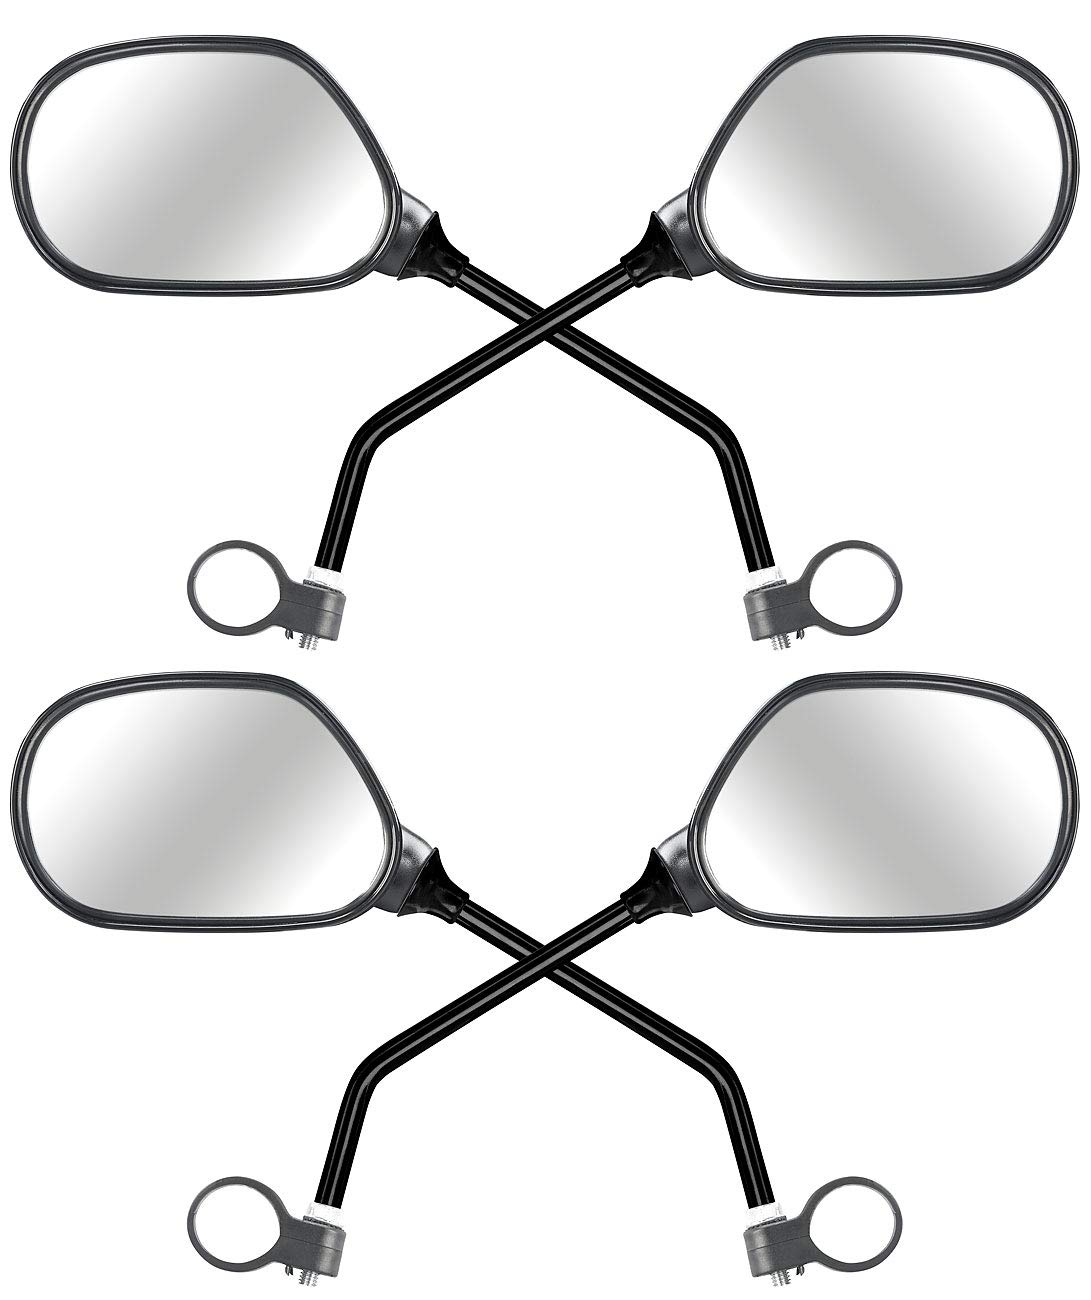 PEARL Fahrradrückspiegel: 4er-Set Fahrrad-Rückspiegel mit Lenkerhalterung, für rechts und links (Spiegel Fahrrad, Radspiegel, Halterung) von PEARL